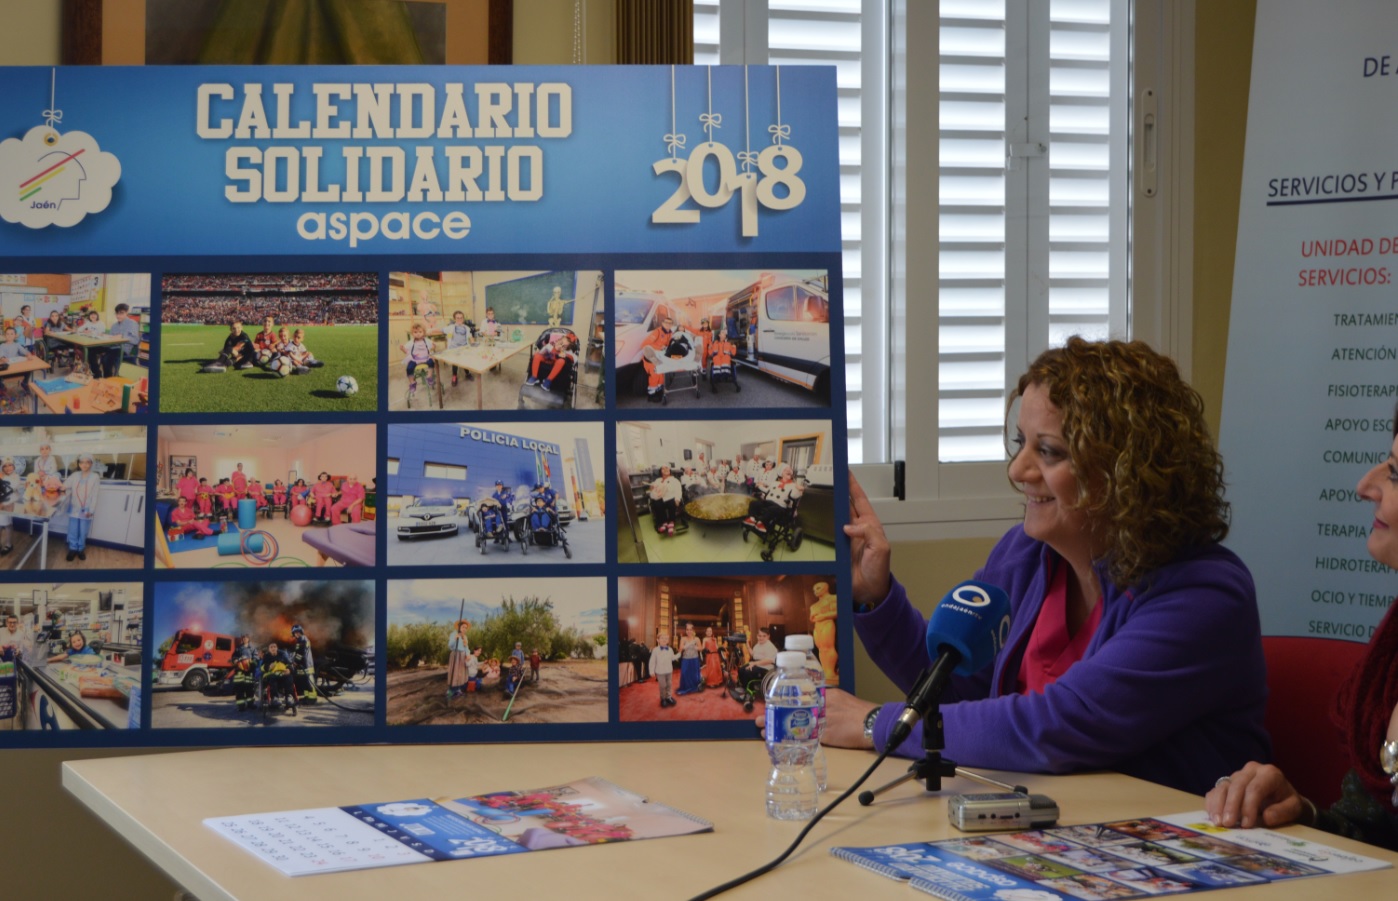 ¡Sumate a nuestro reto con el calendario solidario de Aspace Jaén!